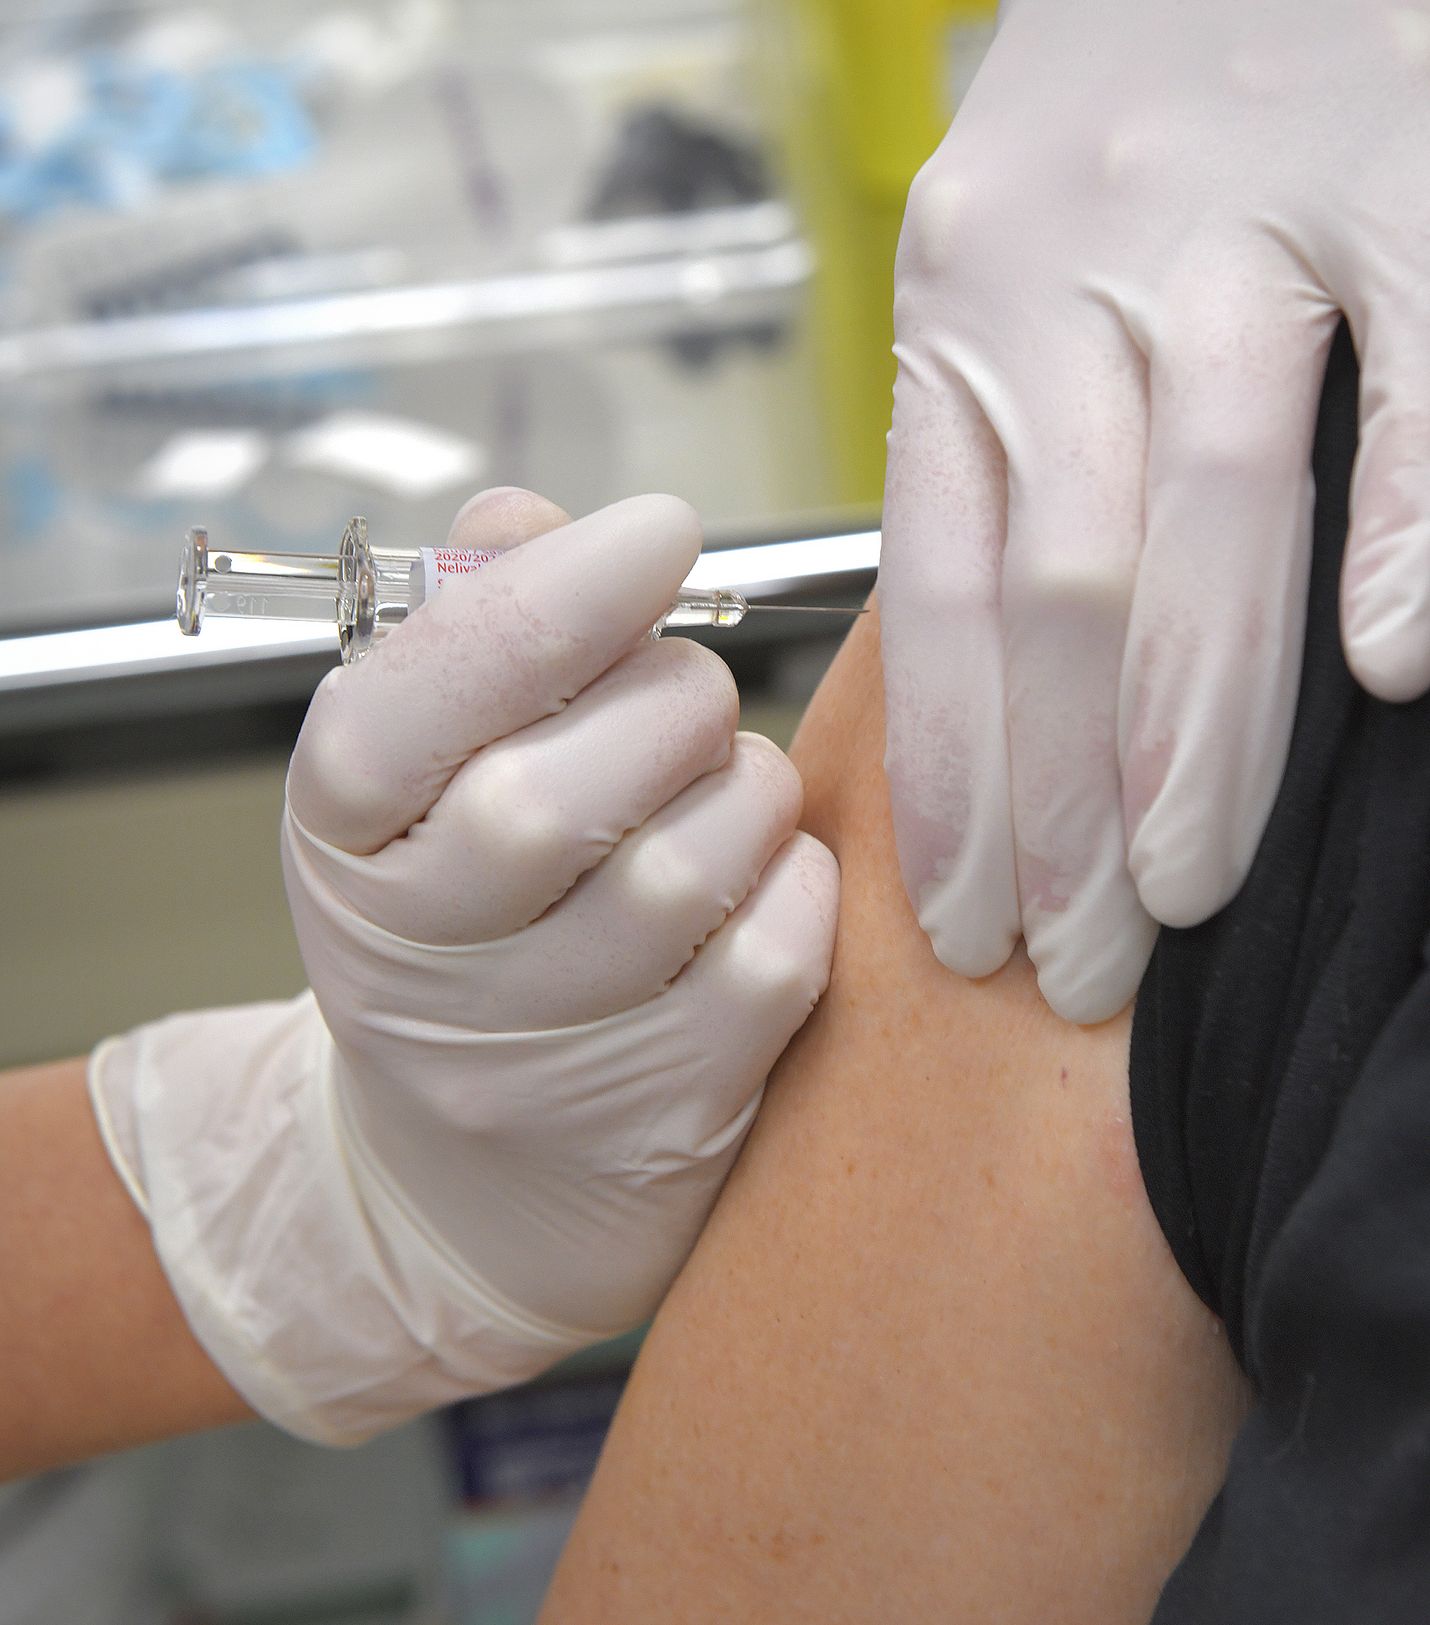 Influenssan osalta riskiryhmien rokotukset käynnistyvät loka-marraskuun vaihteessa. Rokotuksia on silloin tarjolla muun muassa terveysasemilla ja rokotuspisteissä.